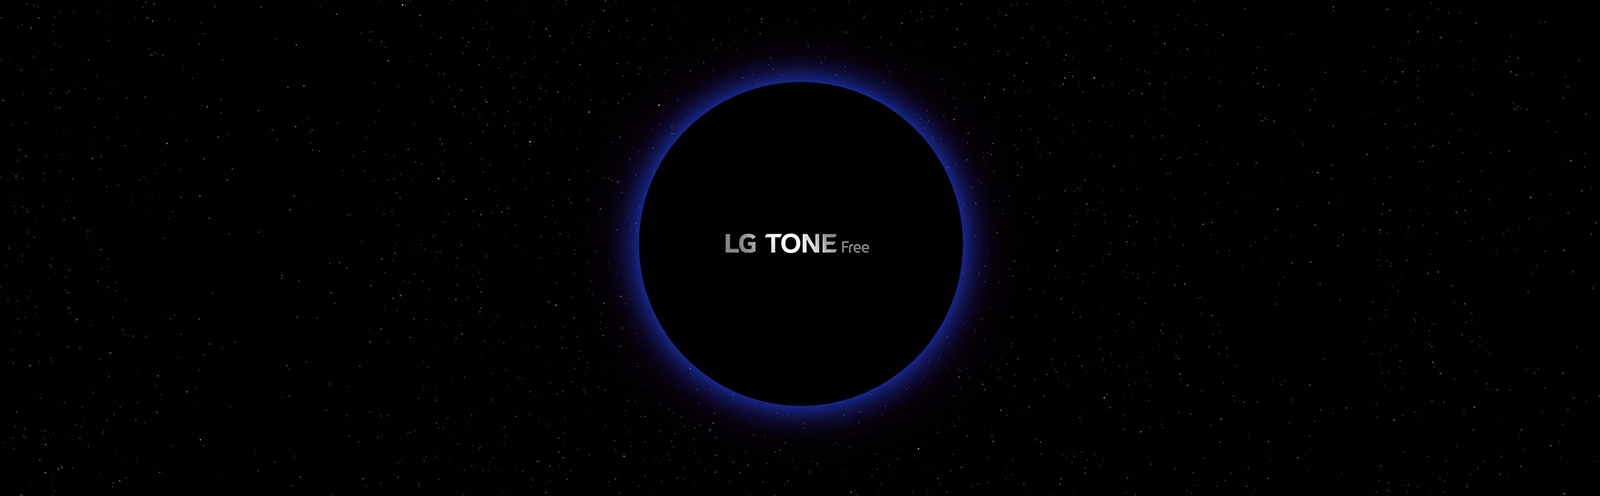 Una imagen de un espacio galáctico y un círculo iluminado de azul en el centro con las letras “LG TONE Free” dentro del círculo